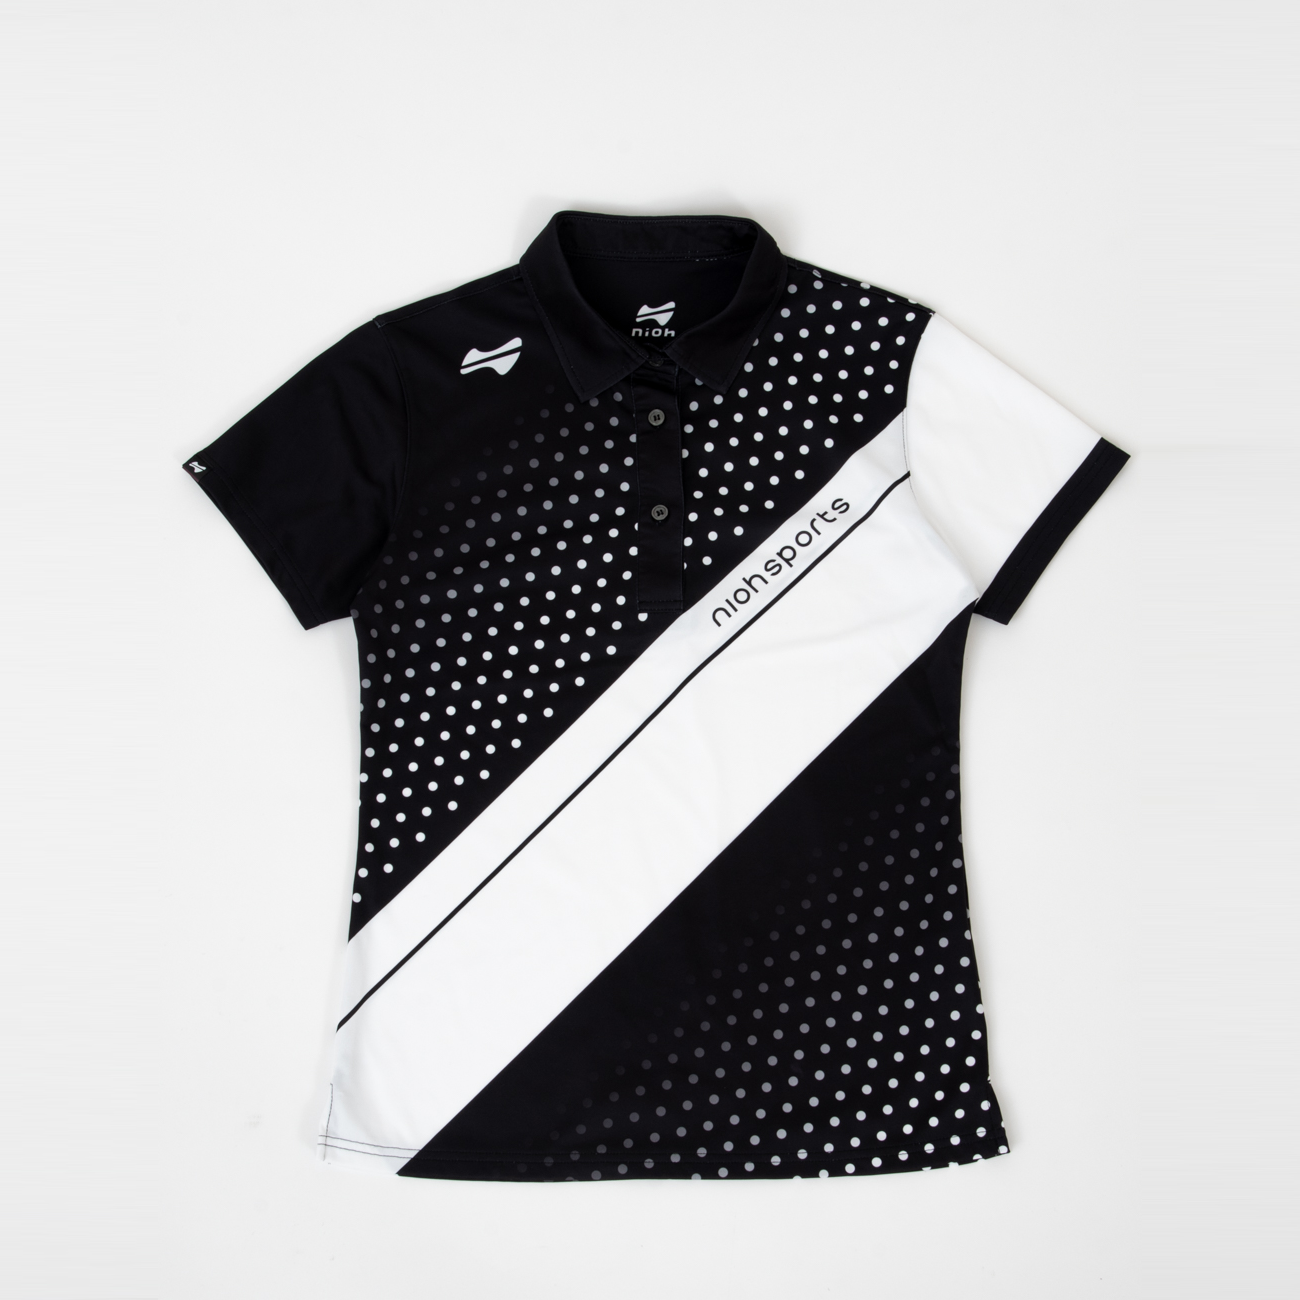 【お求めやすい価格になりました】レディースクロスドットゴルフ半袖ポロシャツ-ブラック